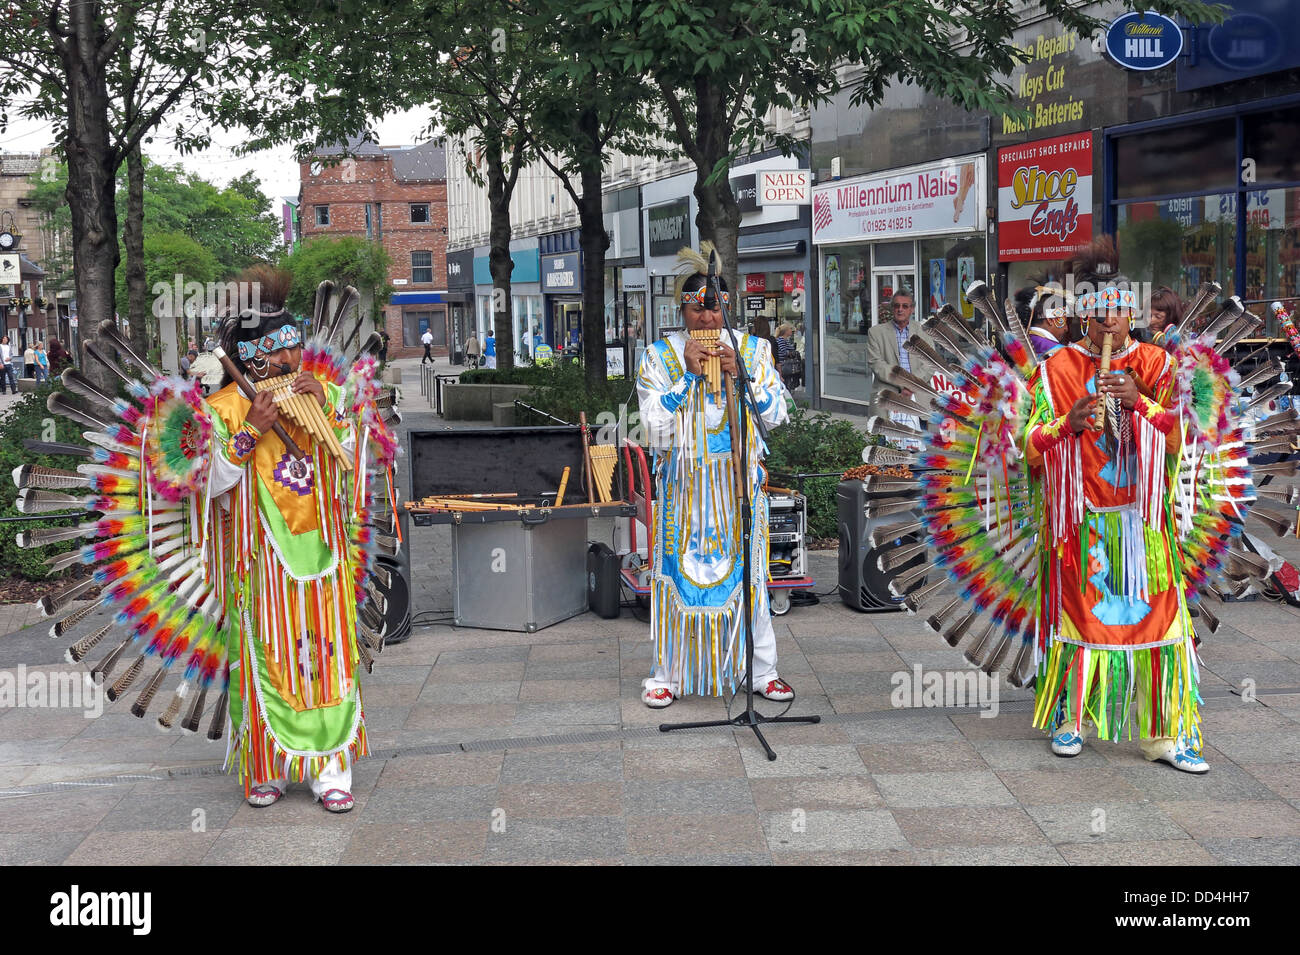 Sud peruviano American buskers / animatori nel centro citta' di Warrington, Cheshire , Inghilterra , REGNO UNITO Foto Stock